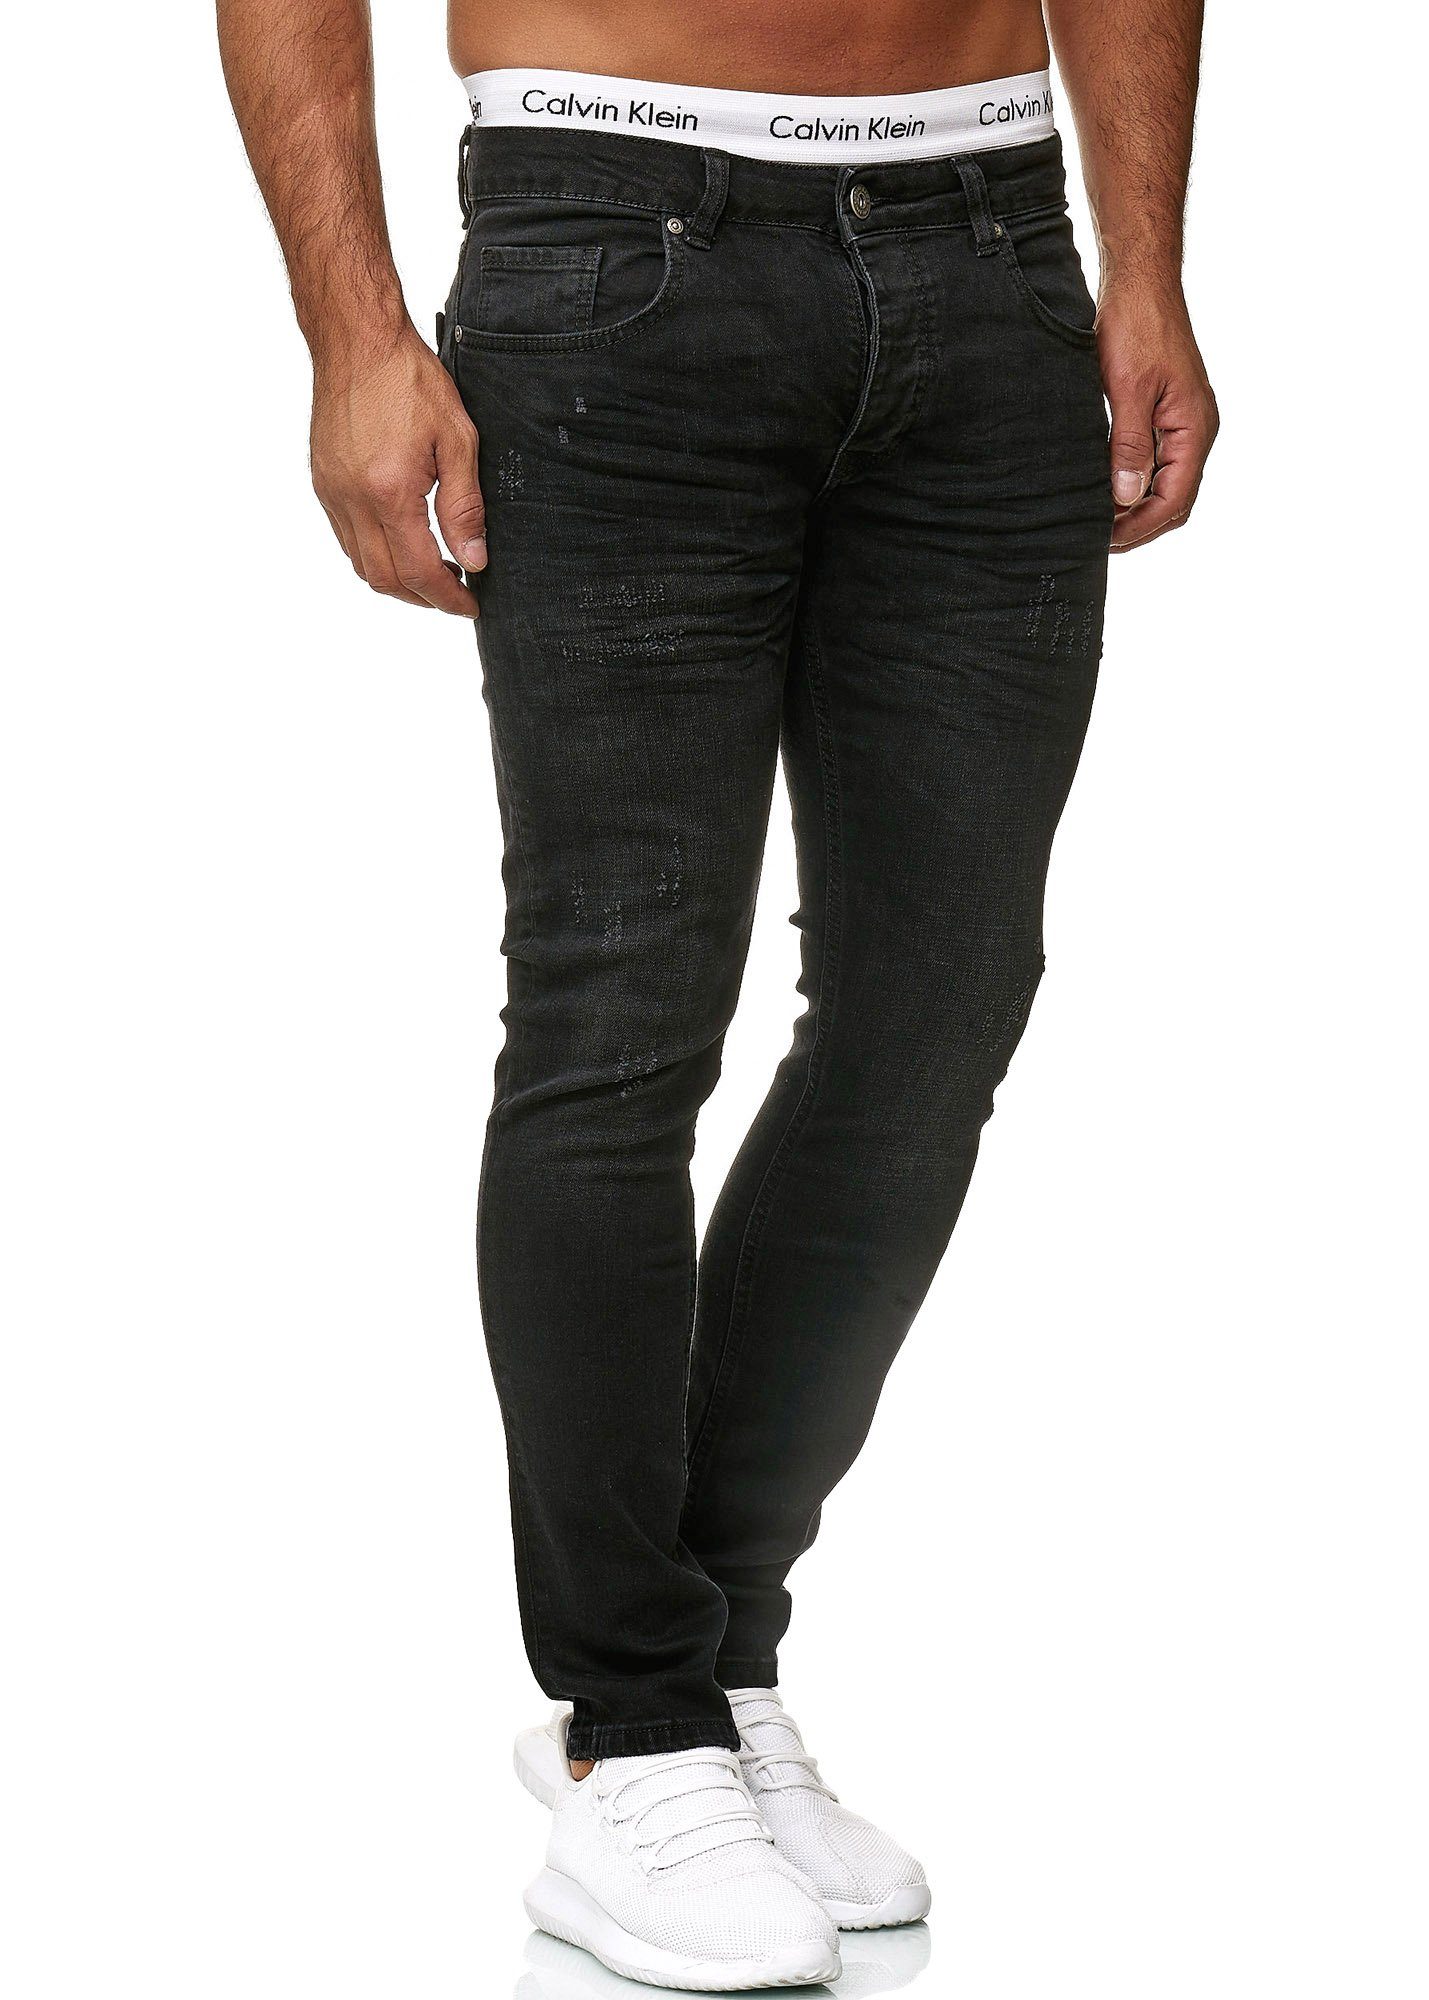 Midnight Basic Code47 Herren Hose Skinny Black Designer Code47 Jeans Regular Skinny-fit-Jeans Jeanshose 603 Used Fit